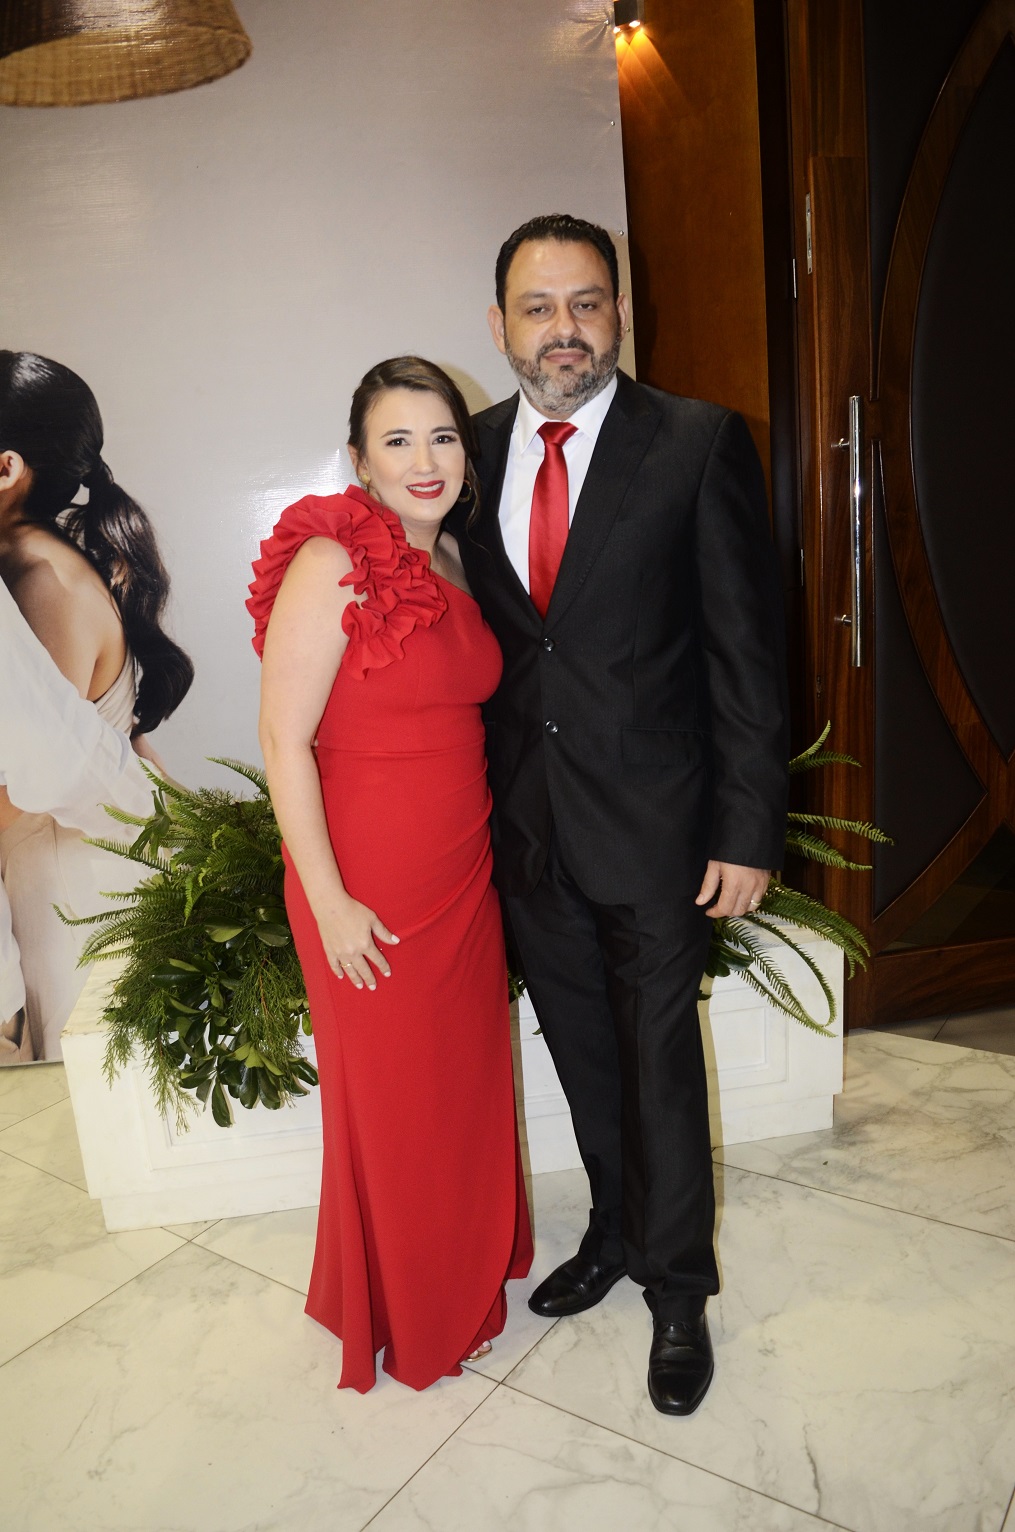 Polette Rodríguez y Juan Ramón Murillo se dieron el “sí, acepto” ante Dios